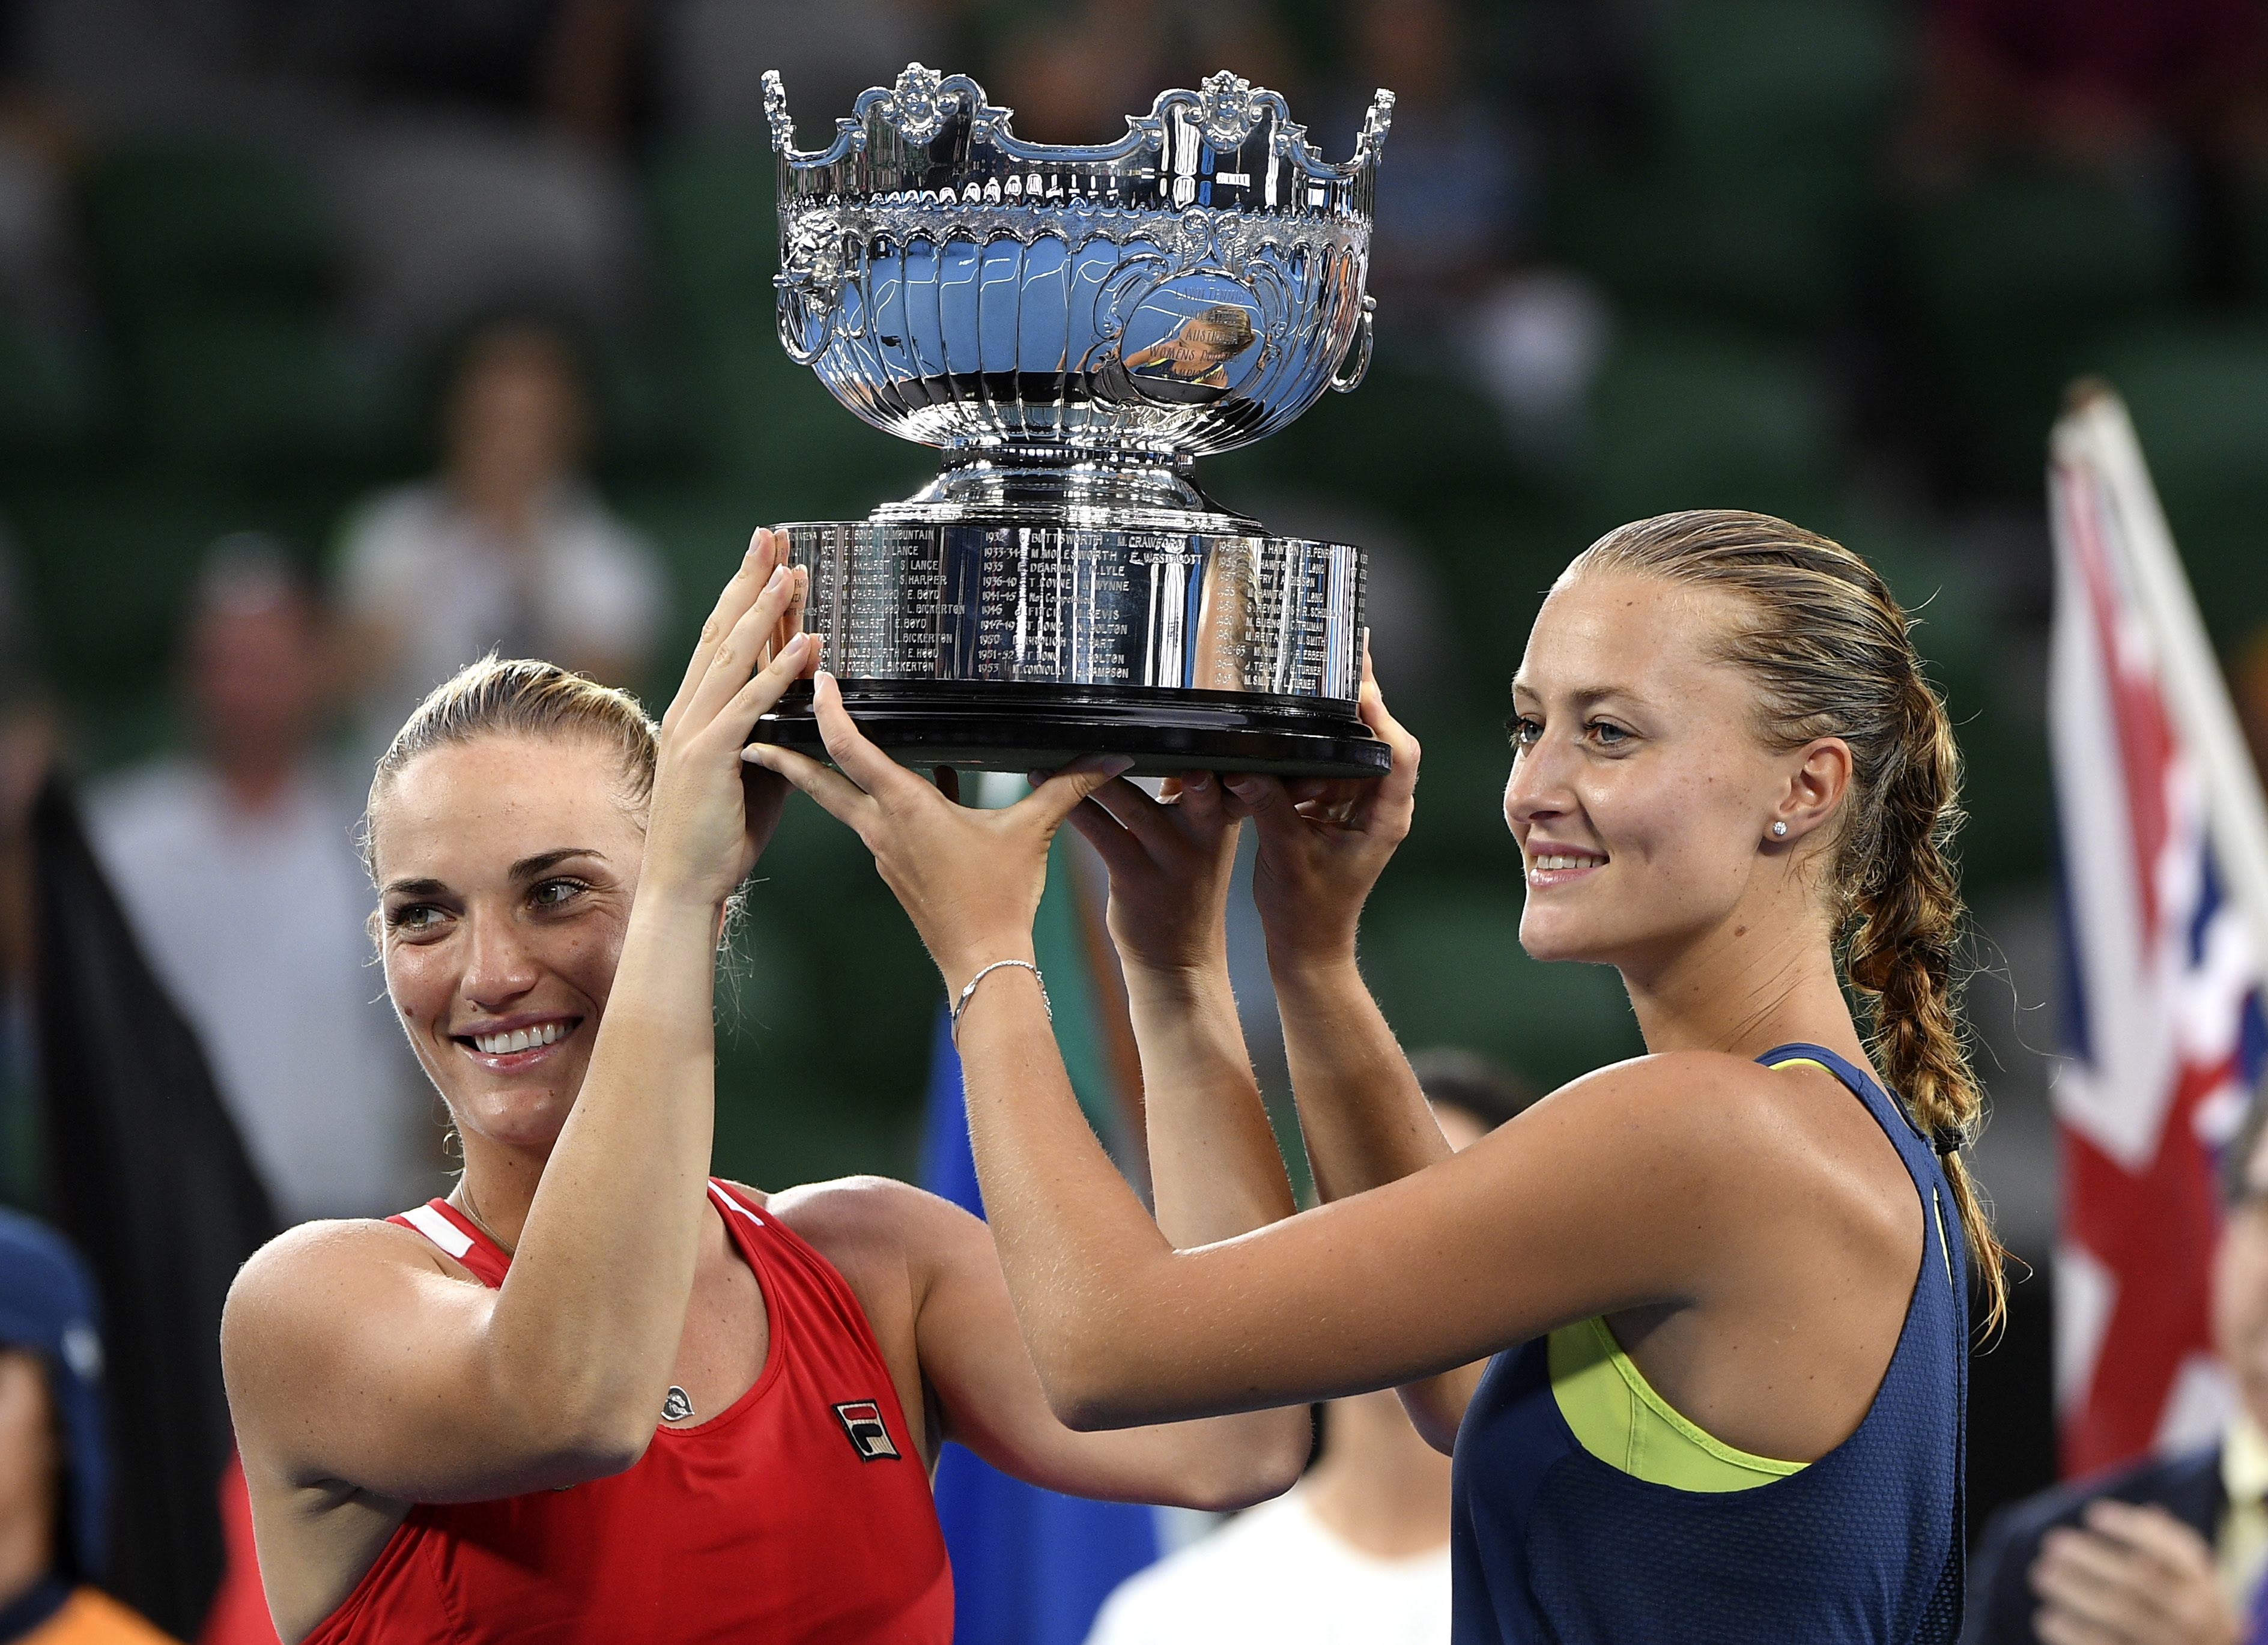 Doubles Take Australian Open women's preview